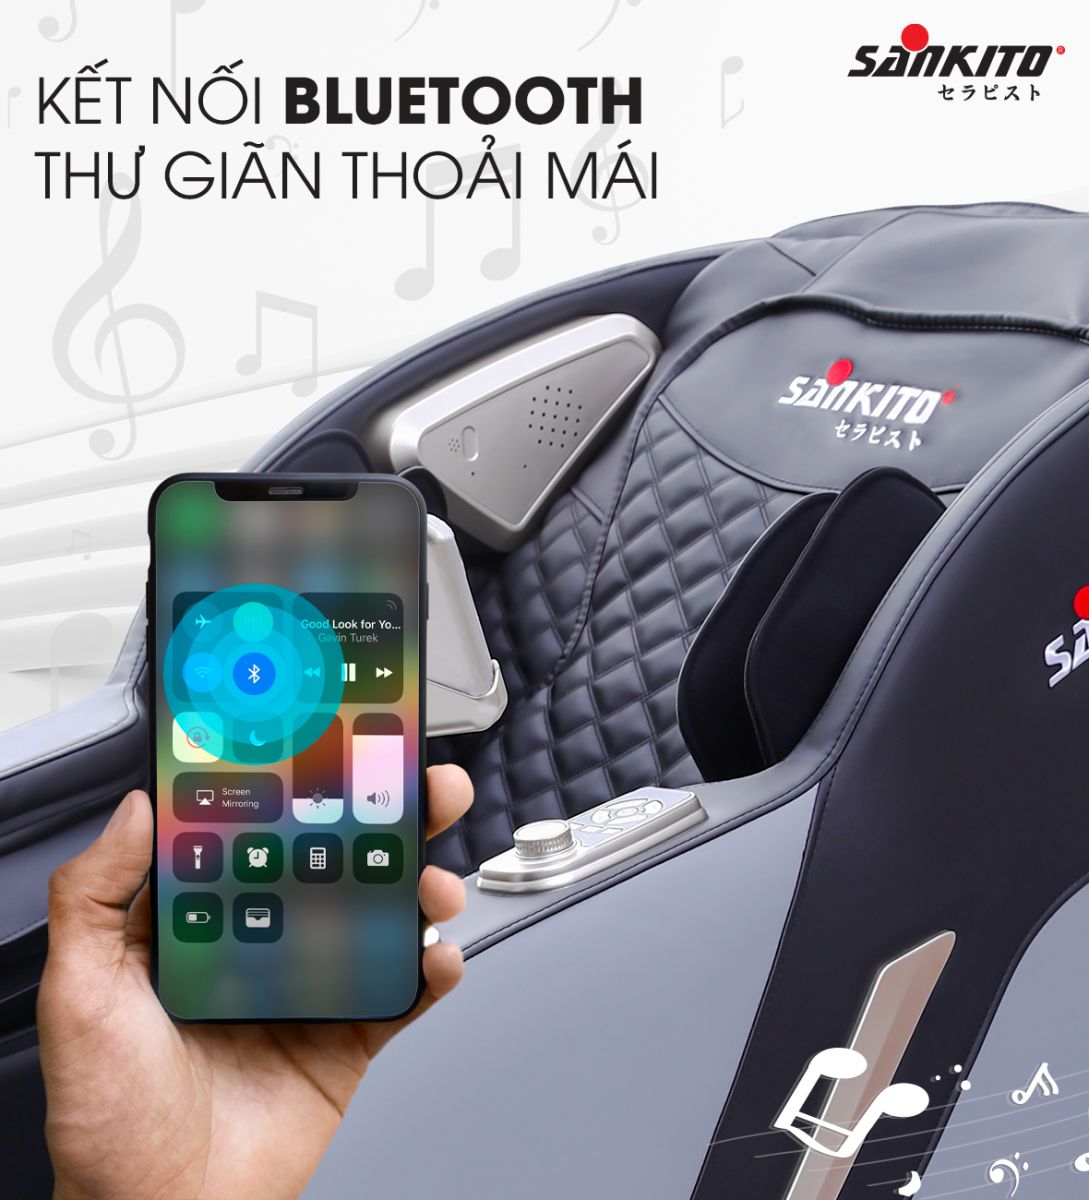 Kết nối Bluetooth thư giãn thoải mái